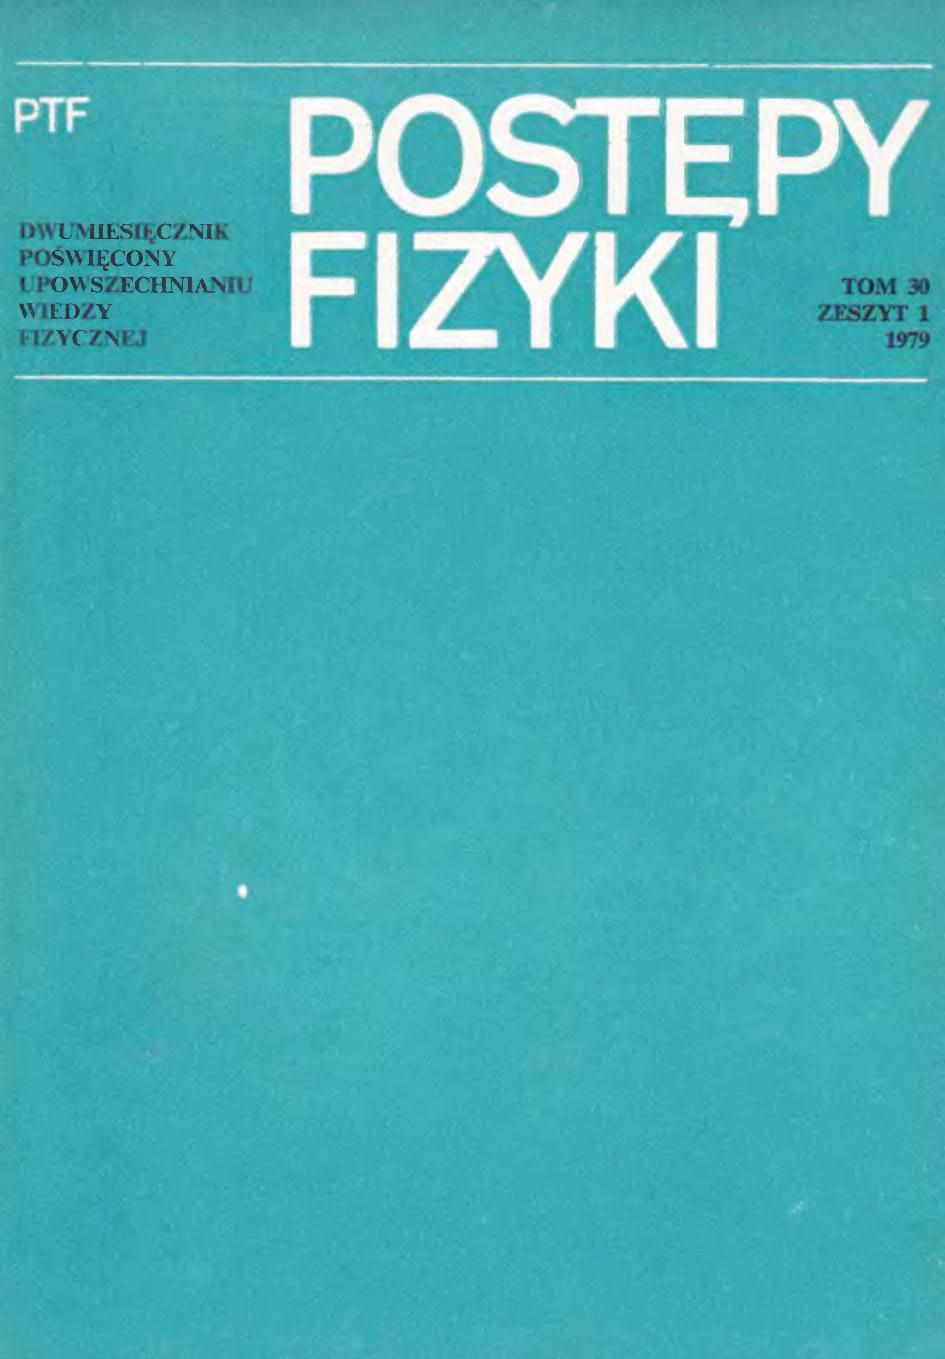 Postępy Fizyki 30 (1) 1979